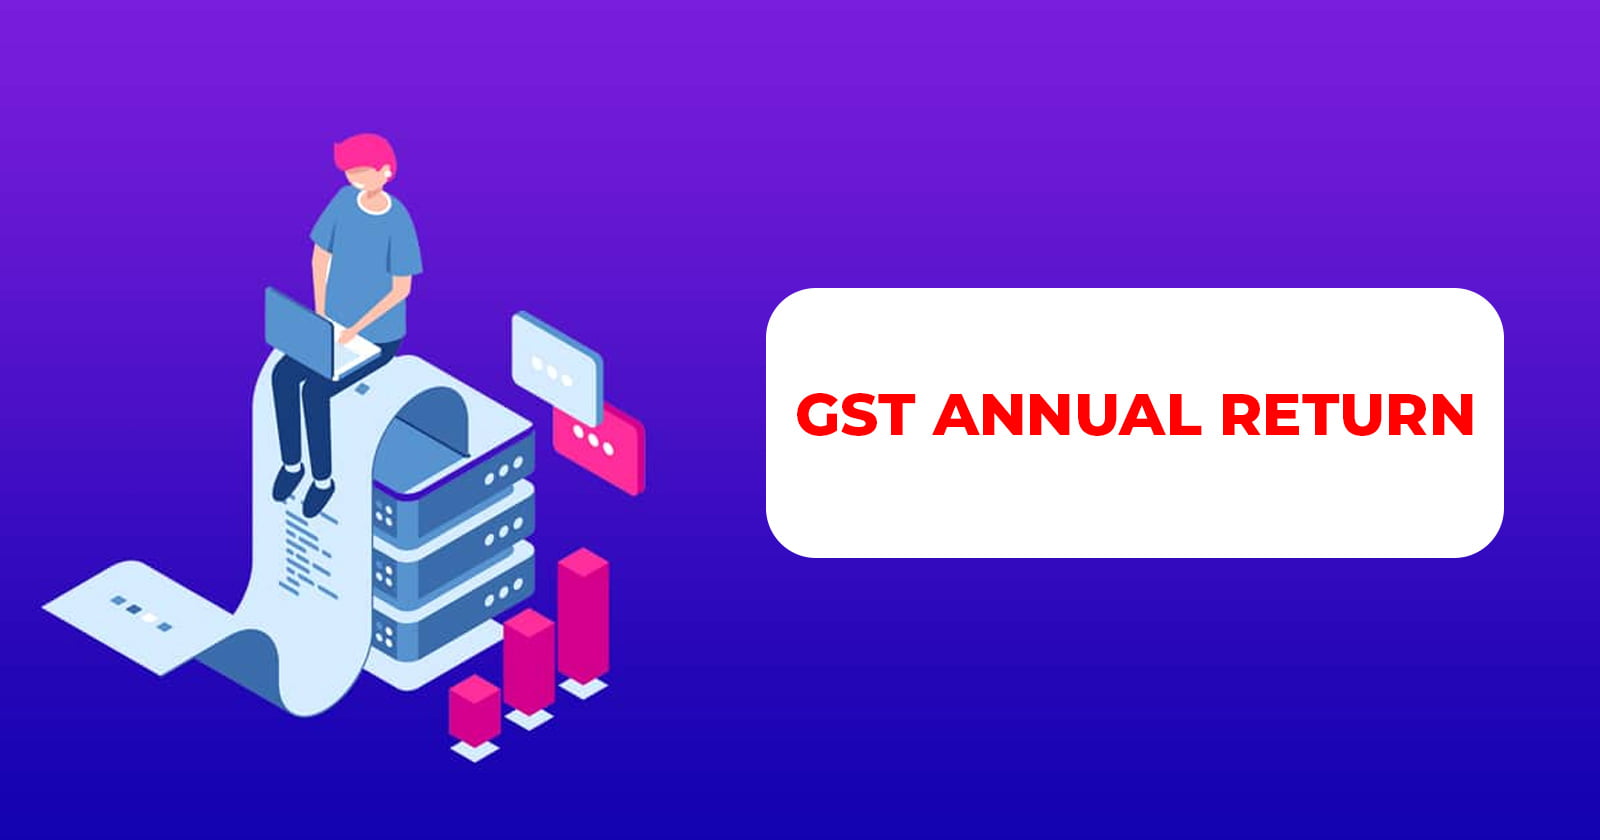 GST Annual Return - GST - Annual Return - Filing Date - GST Annual Return Filing Date - Annual Return Filing Date - Taxscan